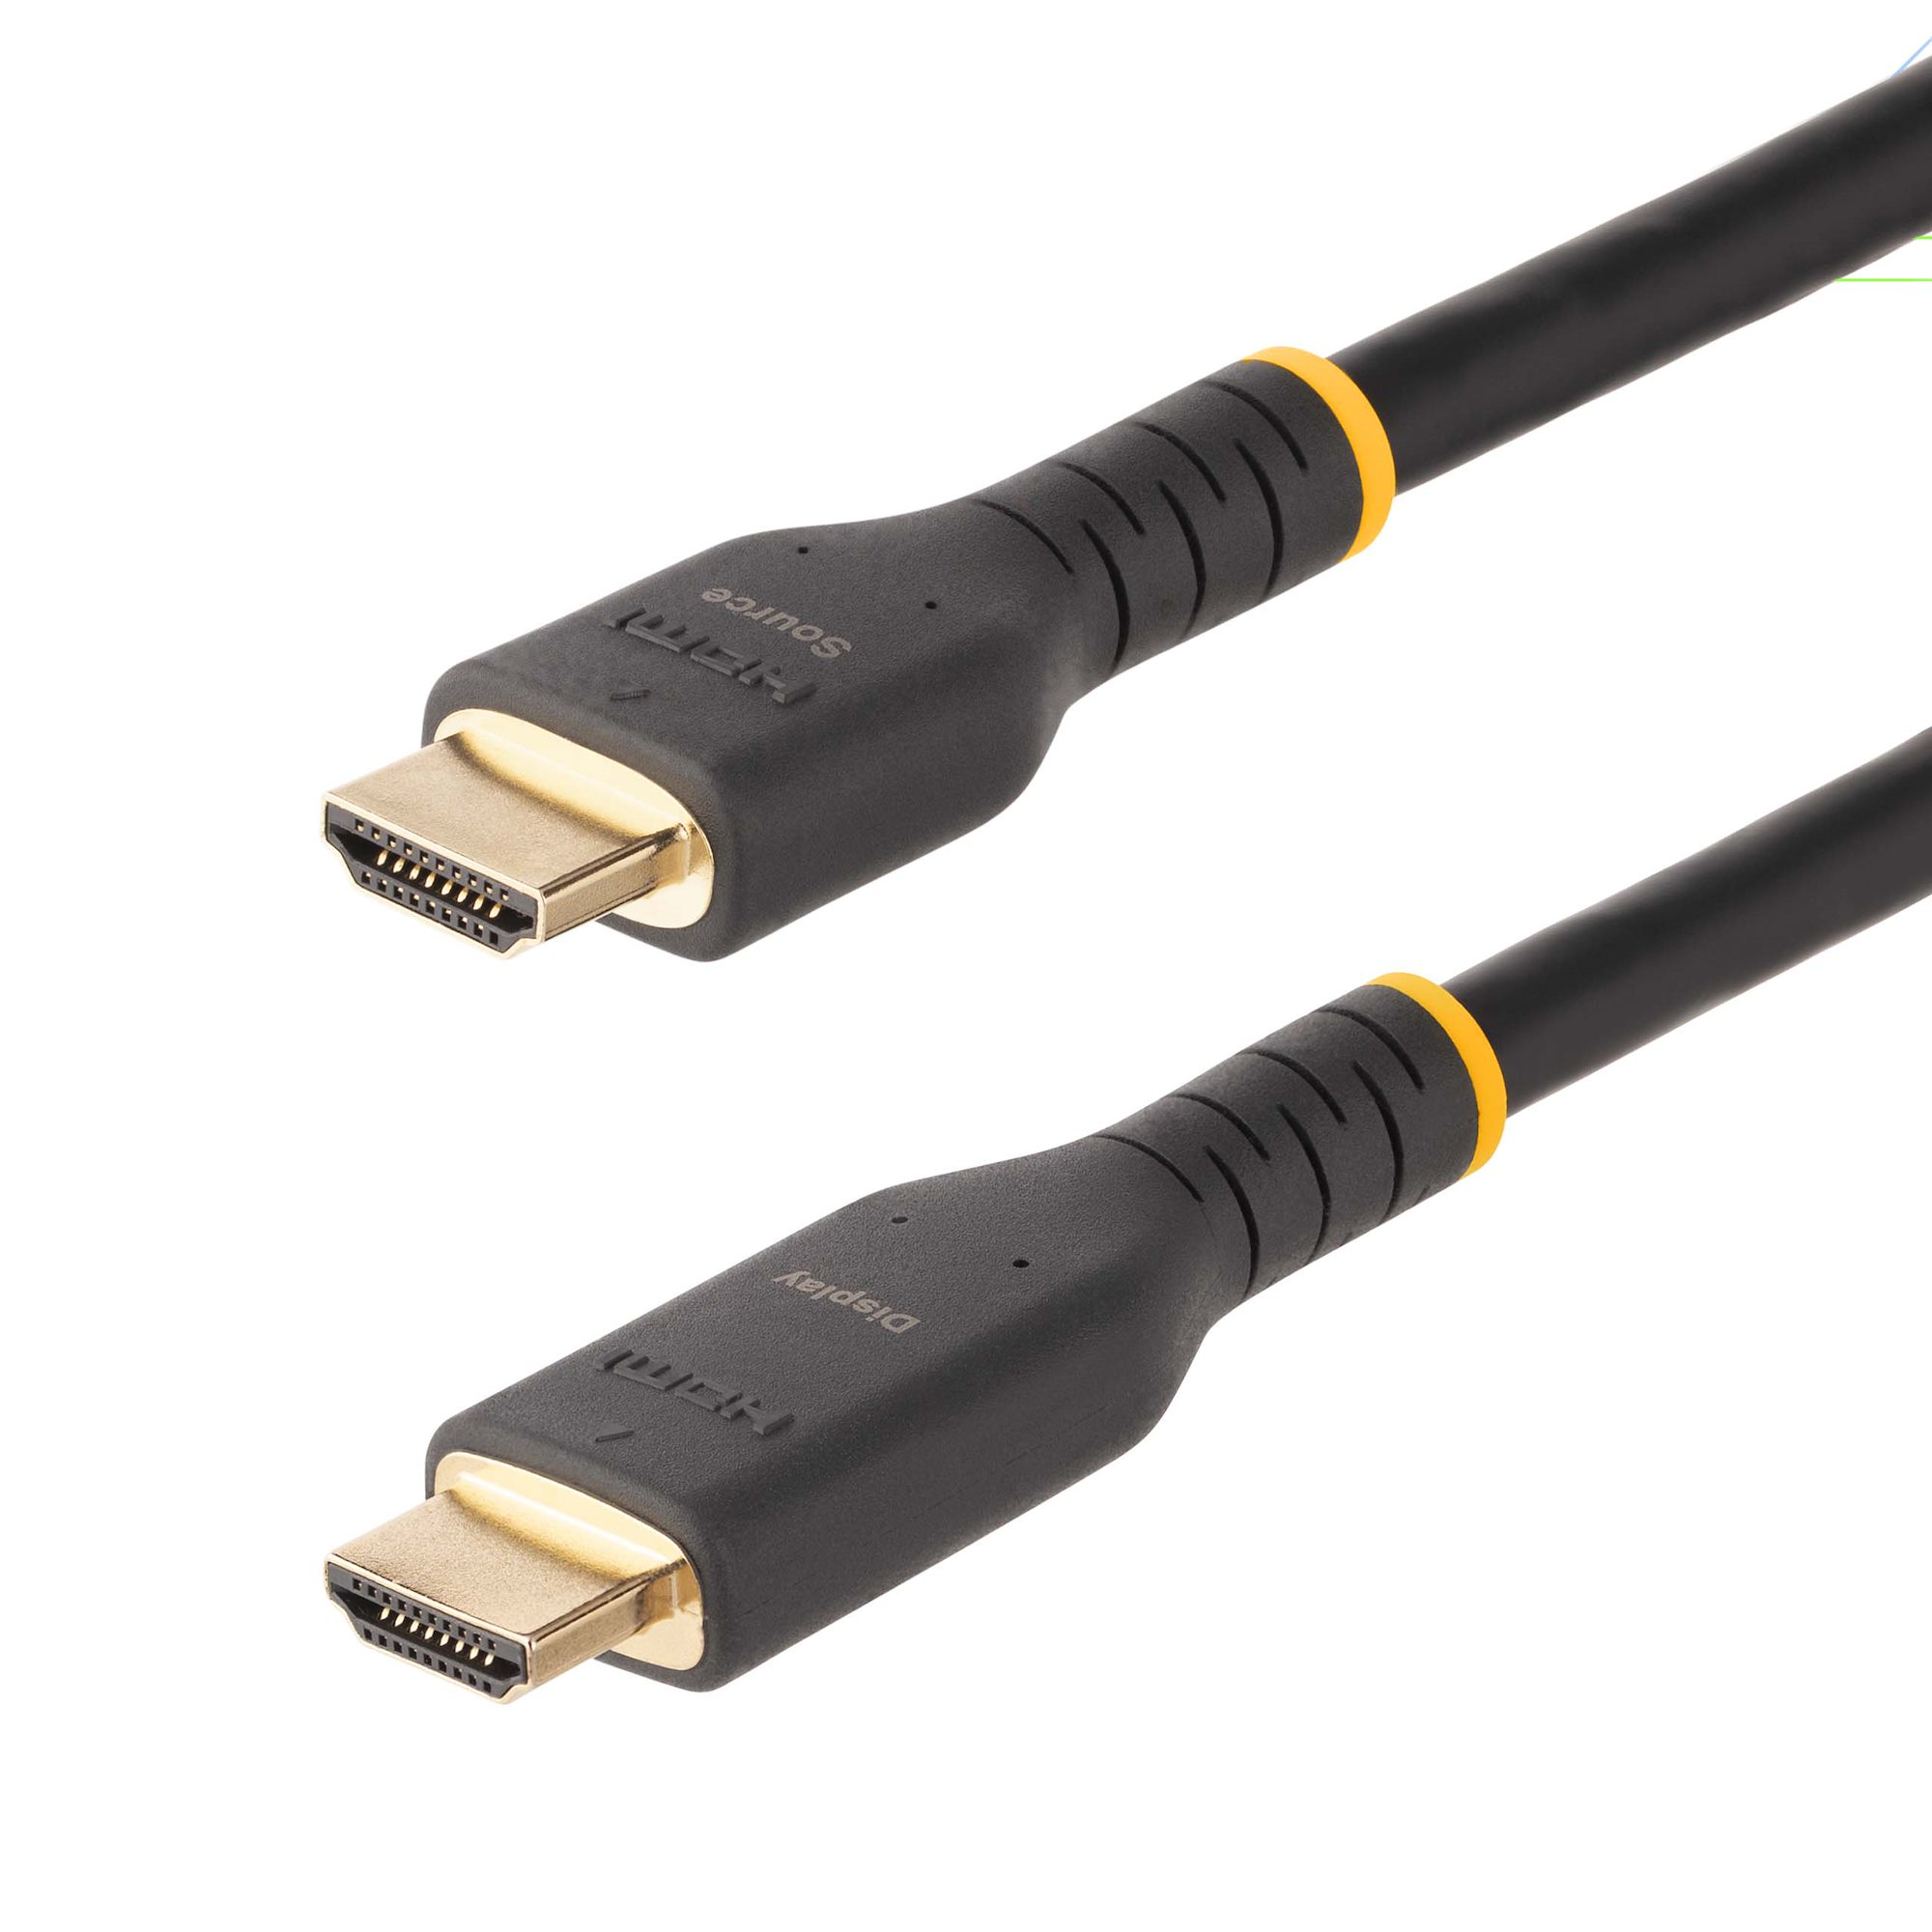 Leia officieel Het kantoor StarTech.com 10m Actieve HDMI Kabel met Ethernet - HDMI 2.0 4K 60Hz UHD -  Robuuste HDMI Kabel met Aramidevezels - Duurzame High Speed HDMI Kabel -  Heavy-Duty HDMI 2.0 Kabel (RH2A-10M-HDMI-CABLE) kopen »